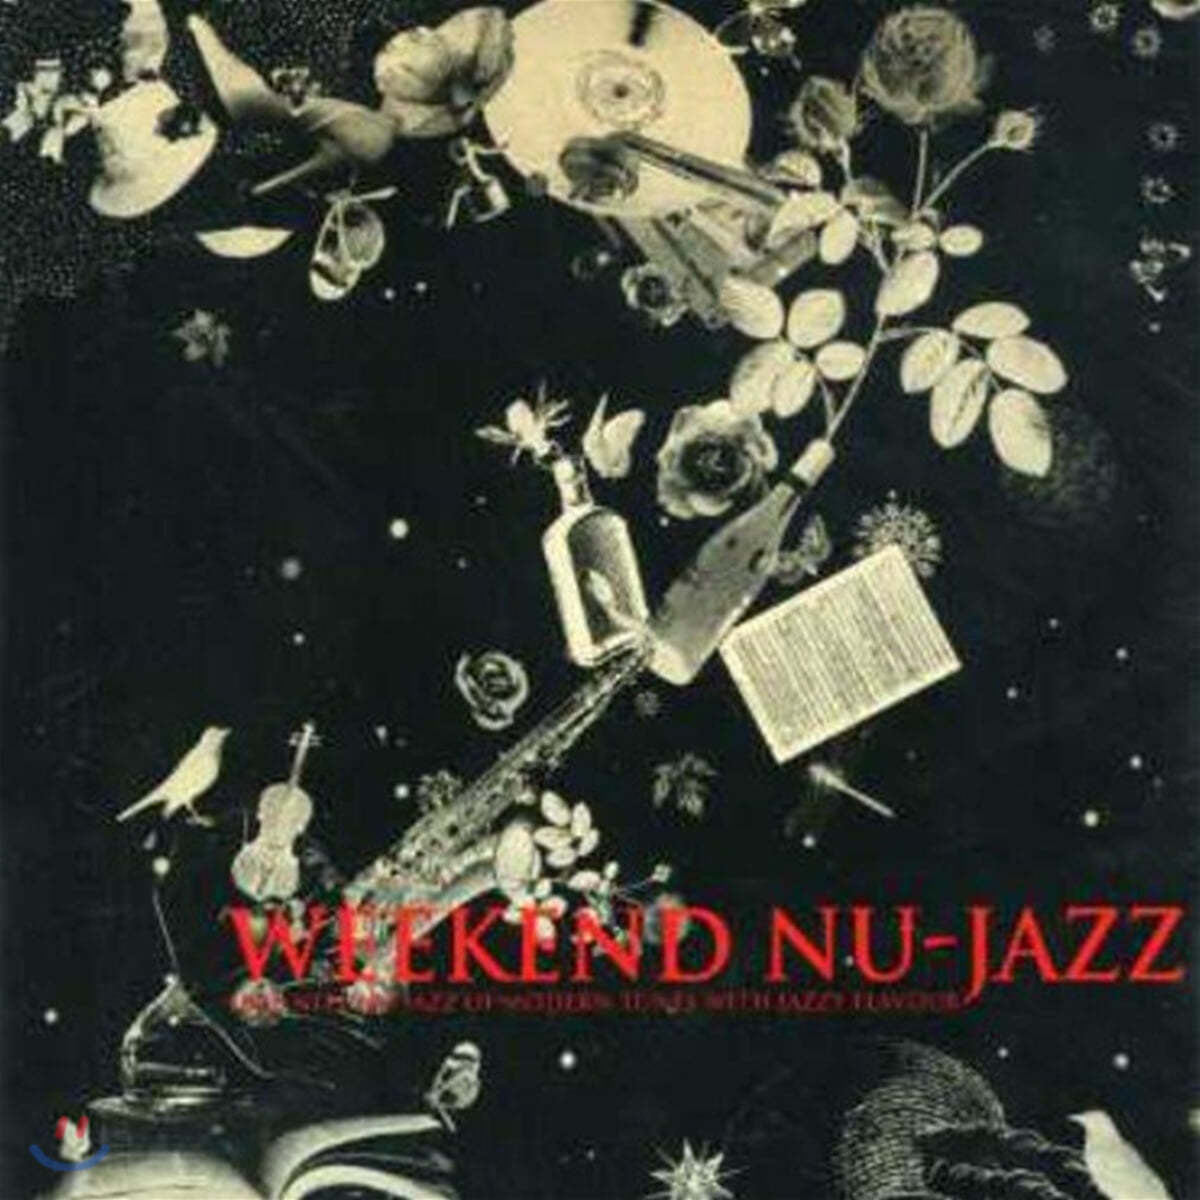 누-재즈 컴필레이션 모음곡 1집 (Weekend nu-jazz: Late Nite Nu-Jazz Of Modern Tunes With Jazzy Flavour)